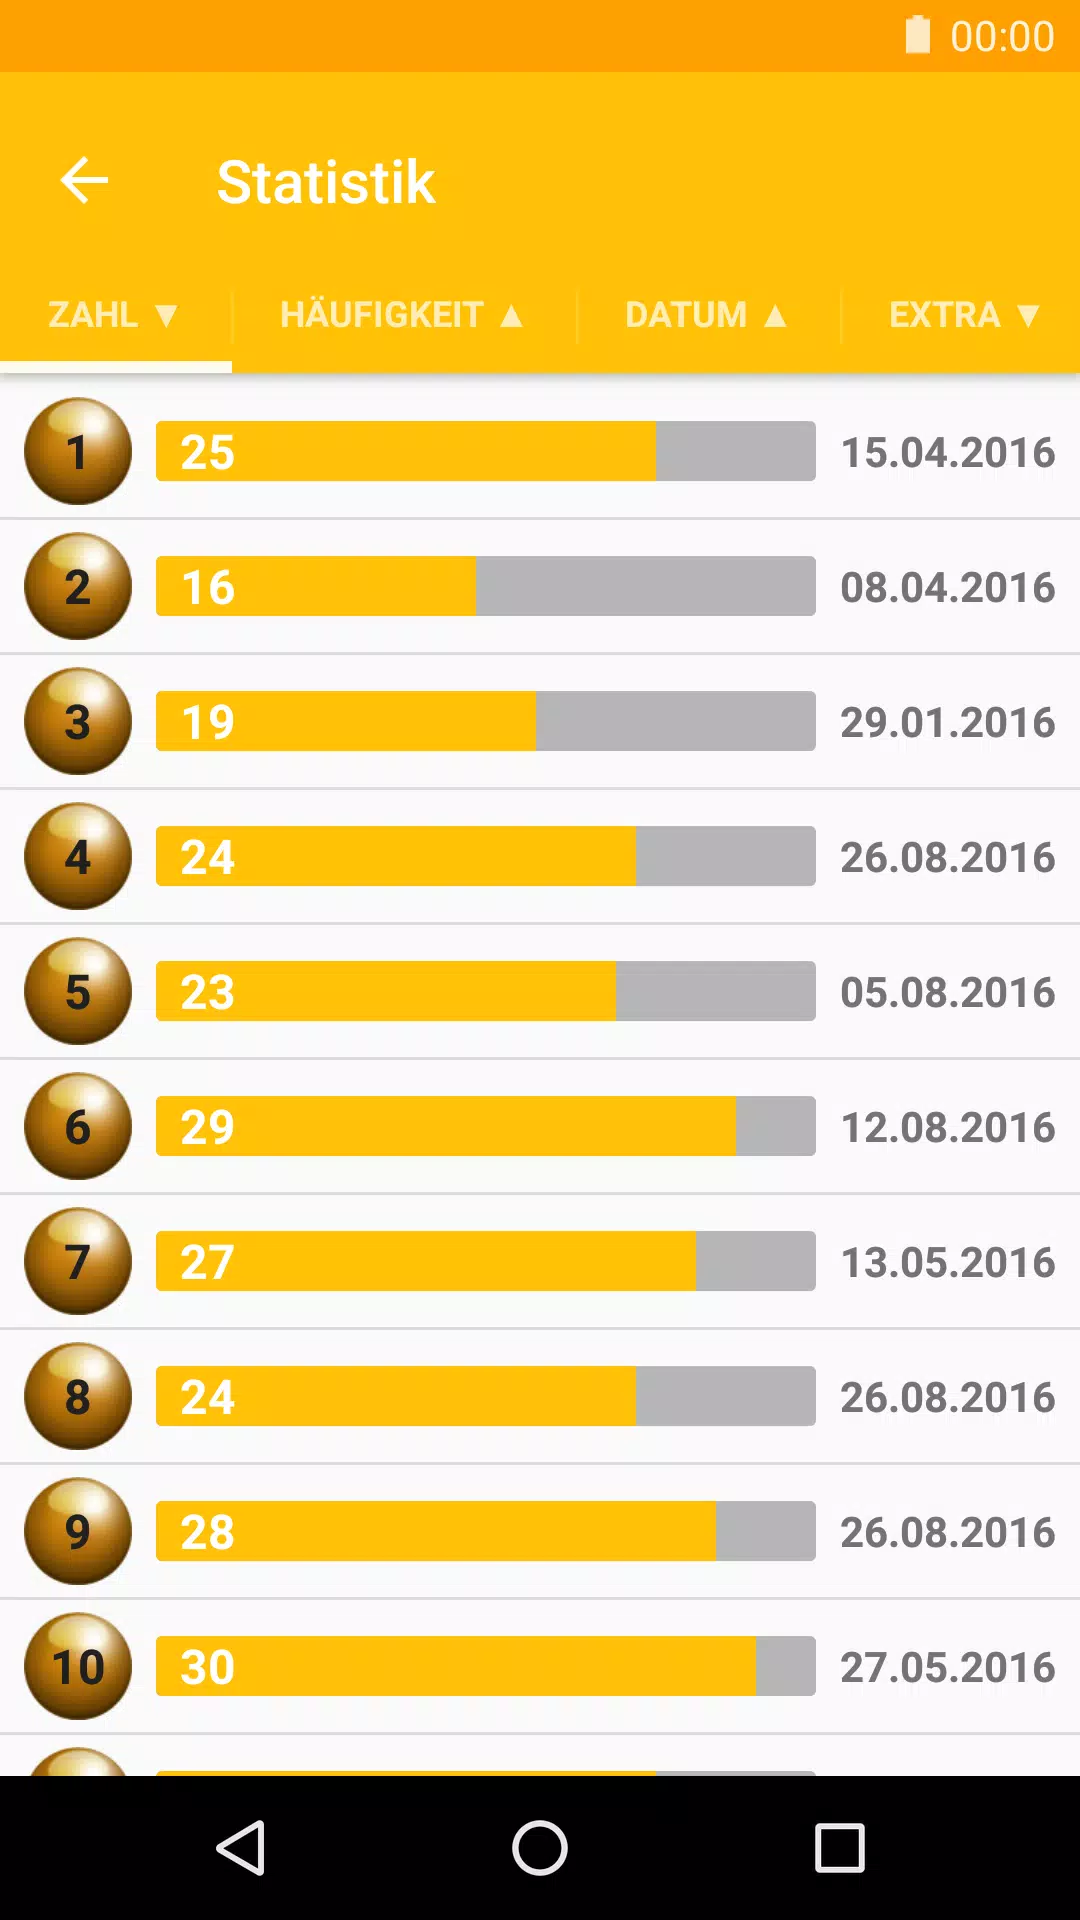 EuroJackpot Zahlen & Statistik APK für Android herunterladen